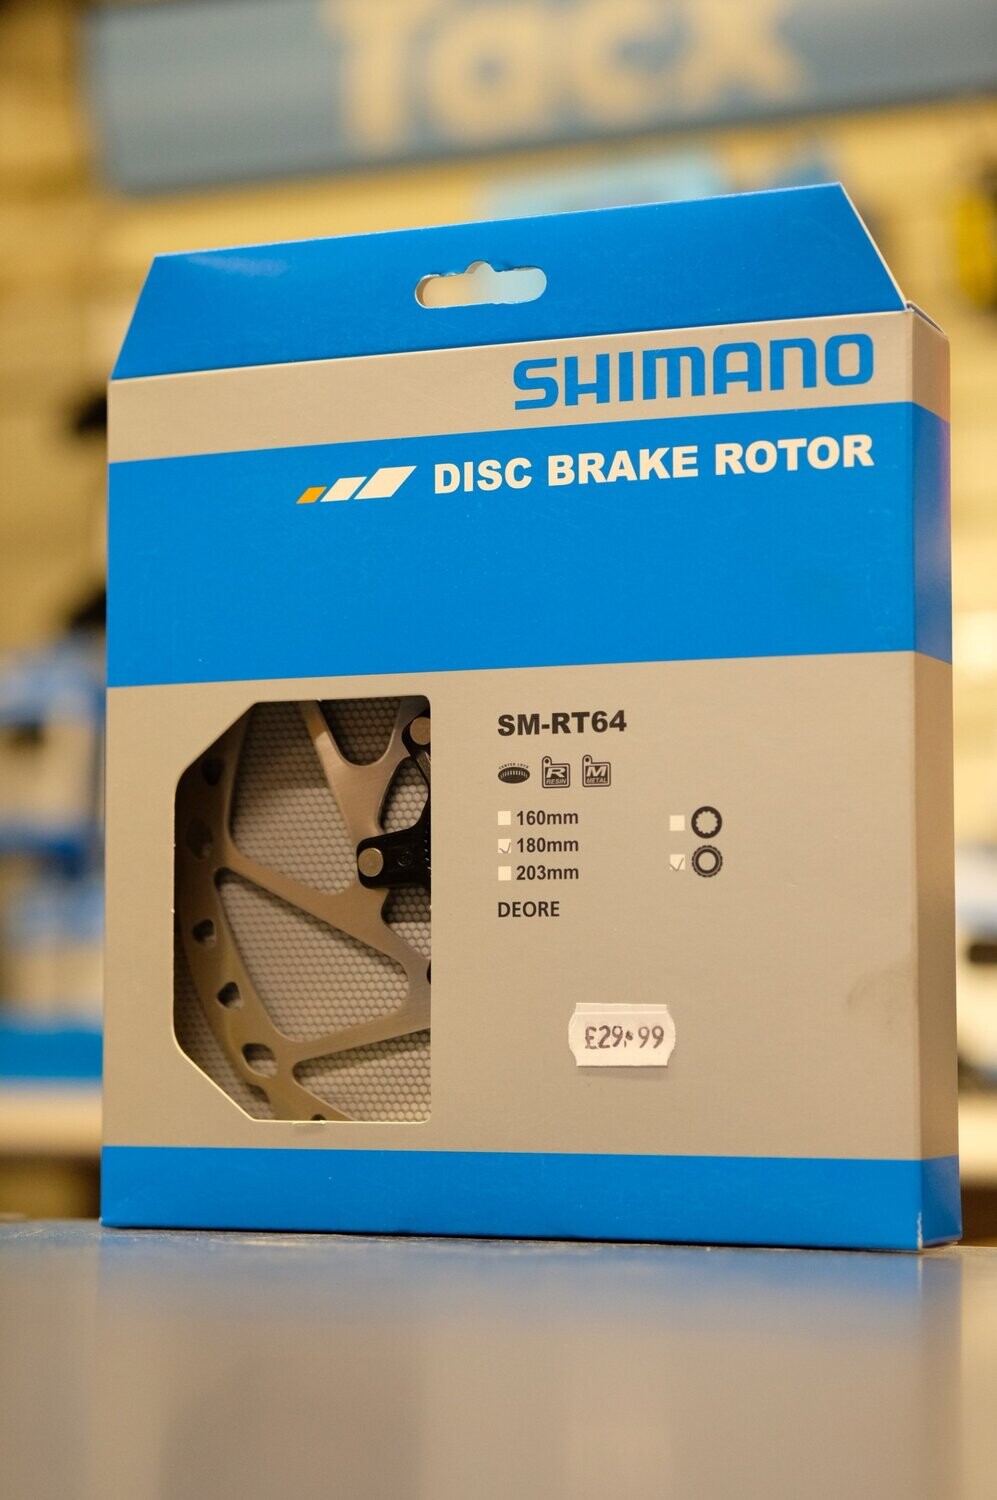 Shimano Deore 180mm Disc Brake Rotor SM-RT64